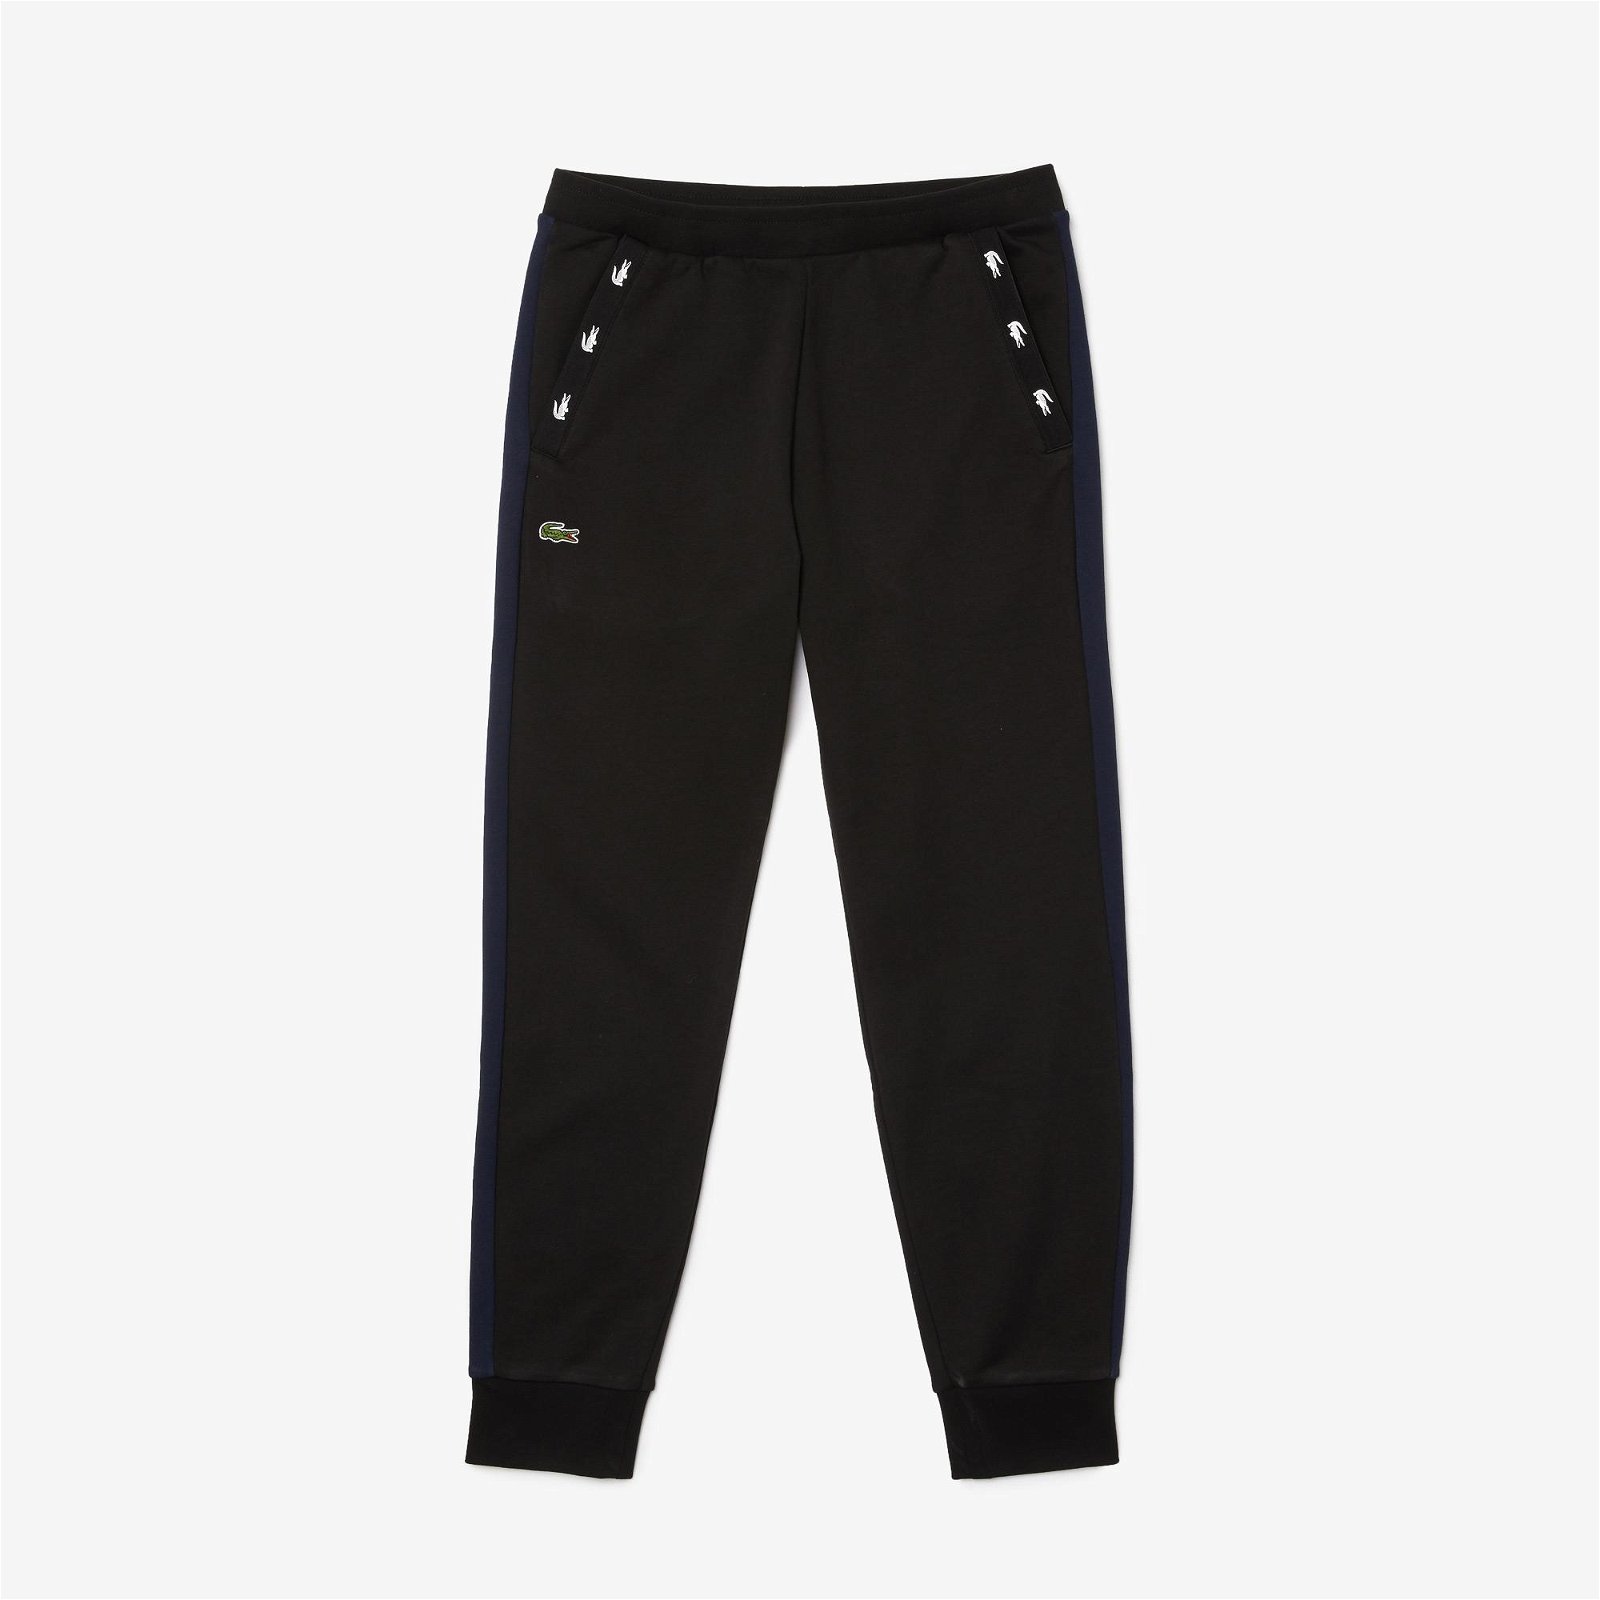 Lacoste pánské trekingové flísové kalhoty s kontrastním akcentem